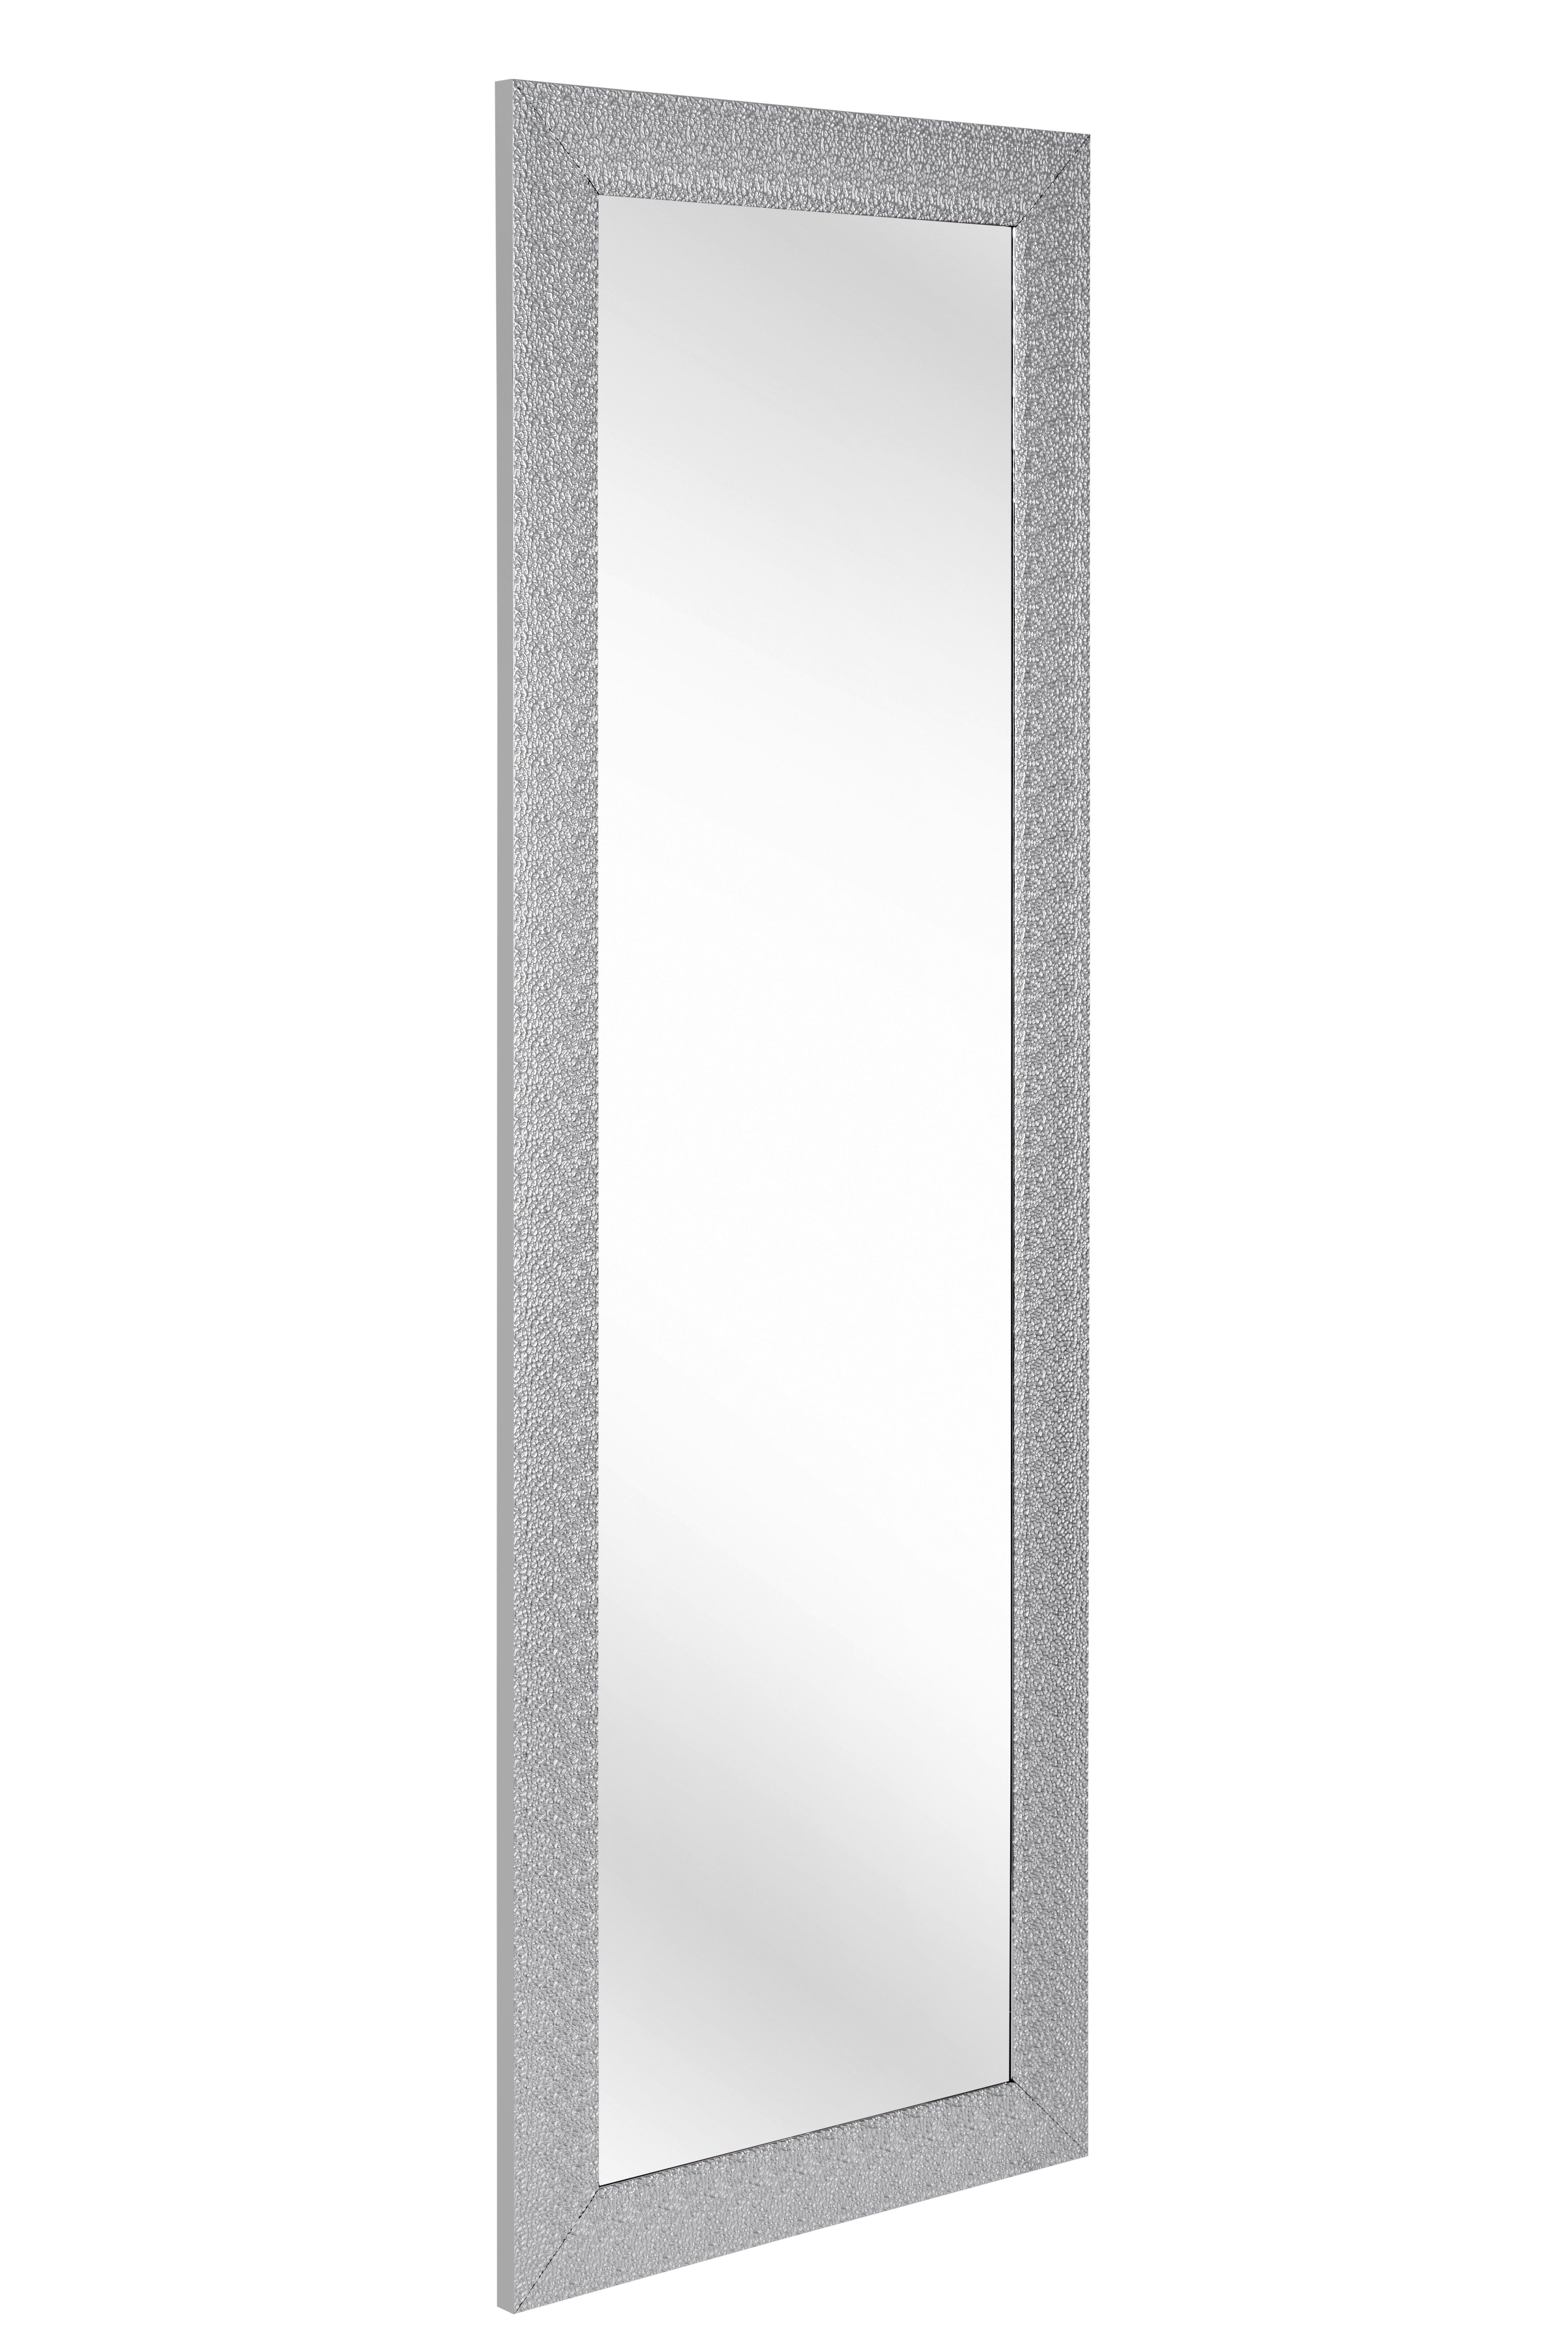 WANDSPIEGEL Silberfarben  - Silberfarben, LIFESTYLE, Glas/Kunststoff (50/150/2cm) - Carryhome